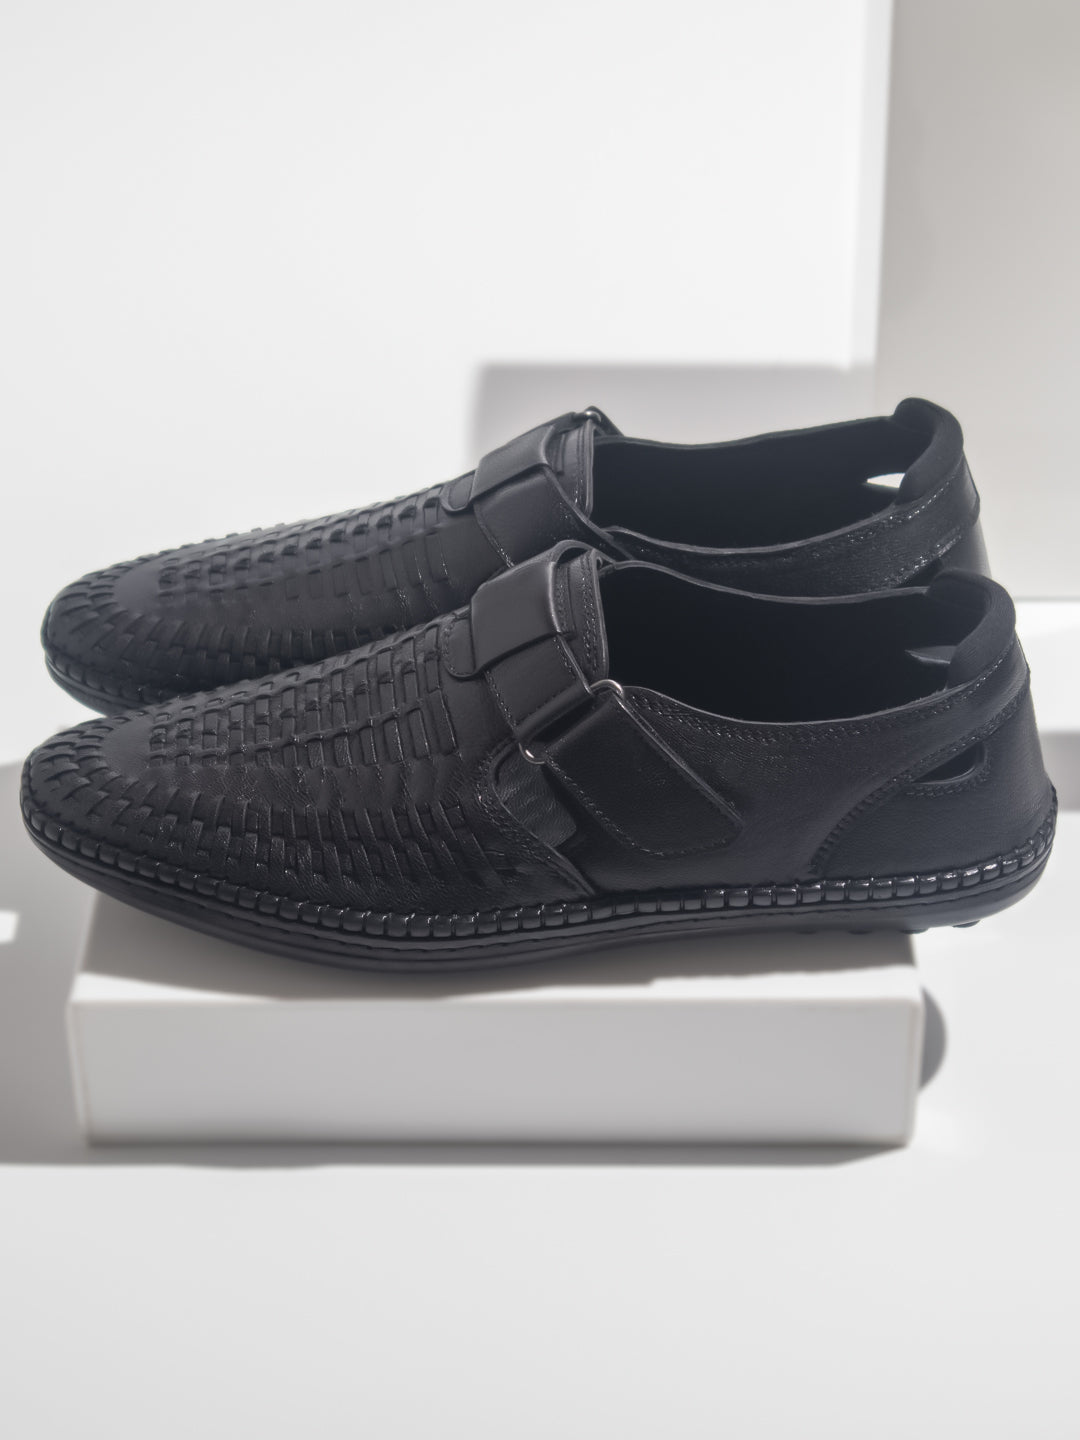 Atesber Black Textured Casual Sandal For Men